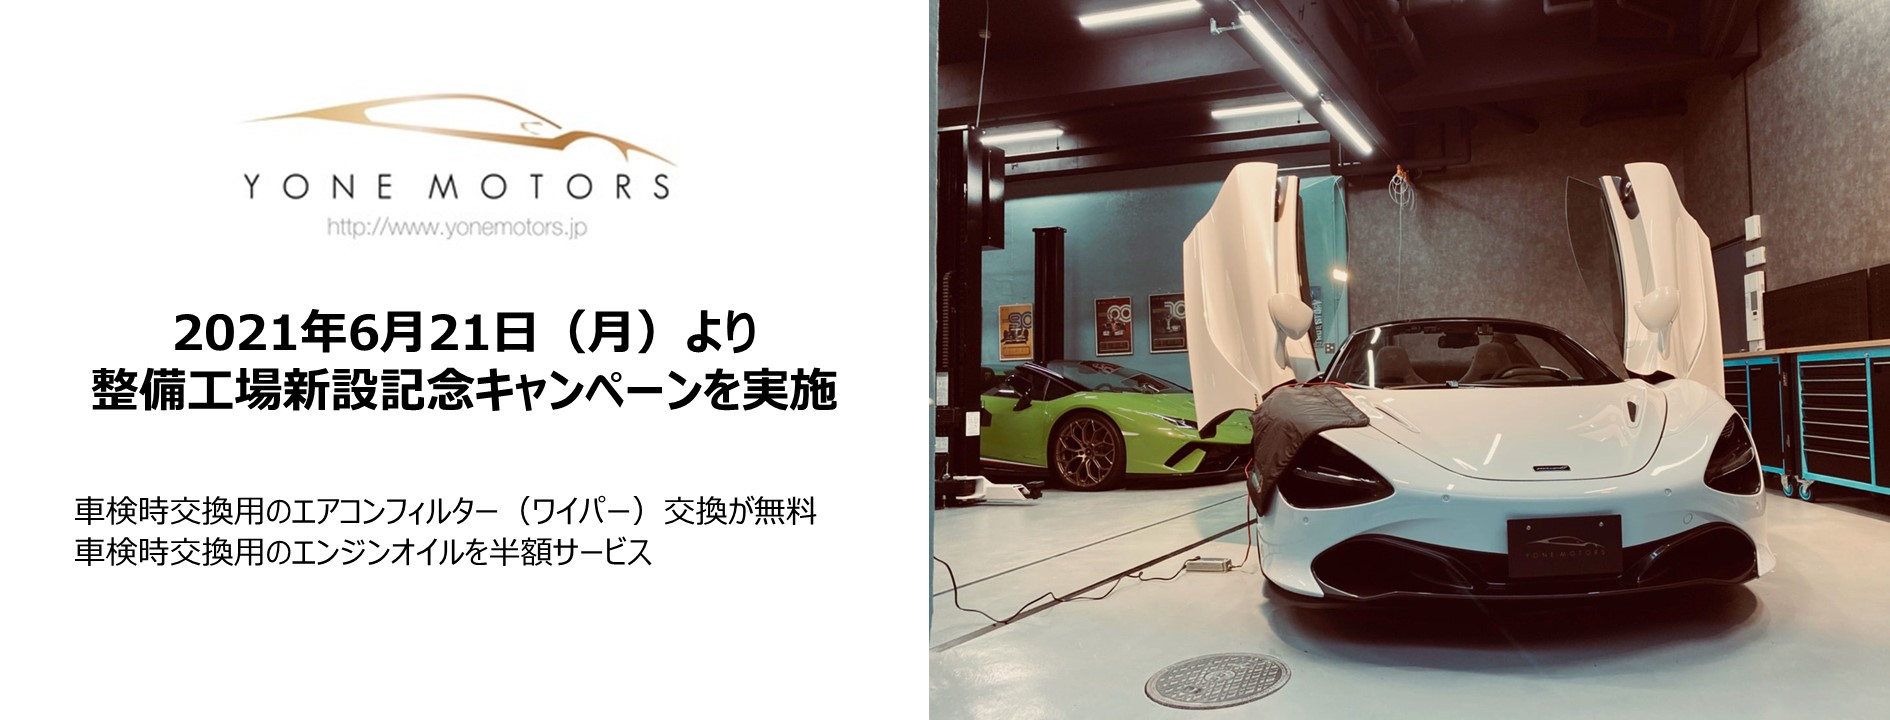 Yonemotorsが都内に自社整備工場を新設 エアコンフィルター交換 が無料 エンジンオイルが半額になる記念キャンペーンを実施 株式会社米自動車のプレスリリース